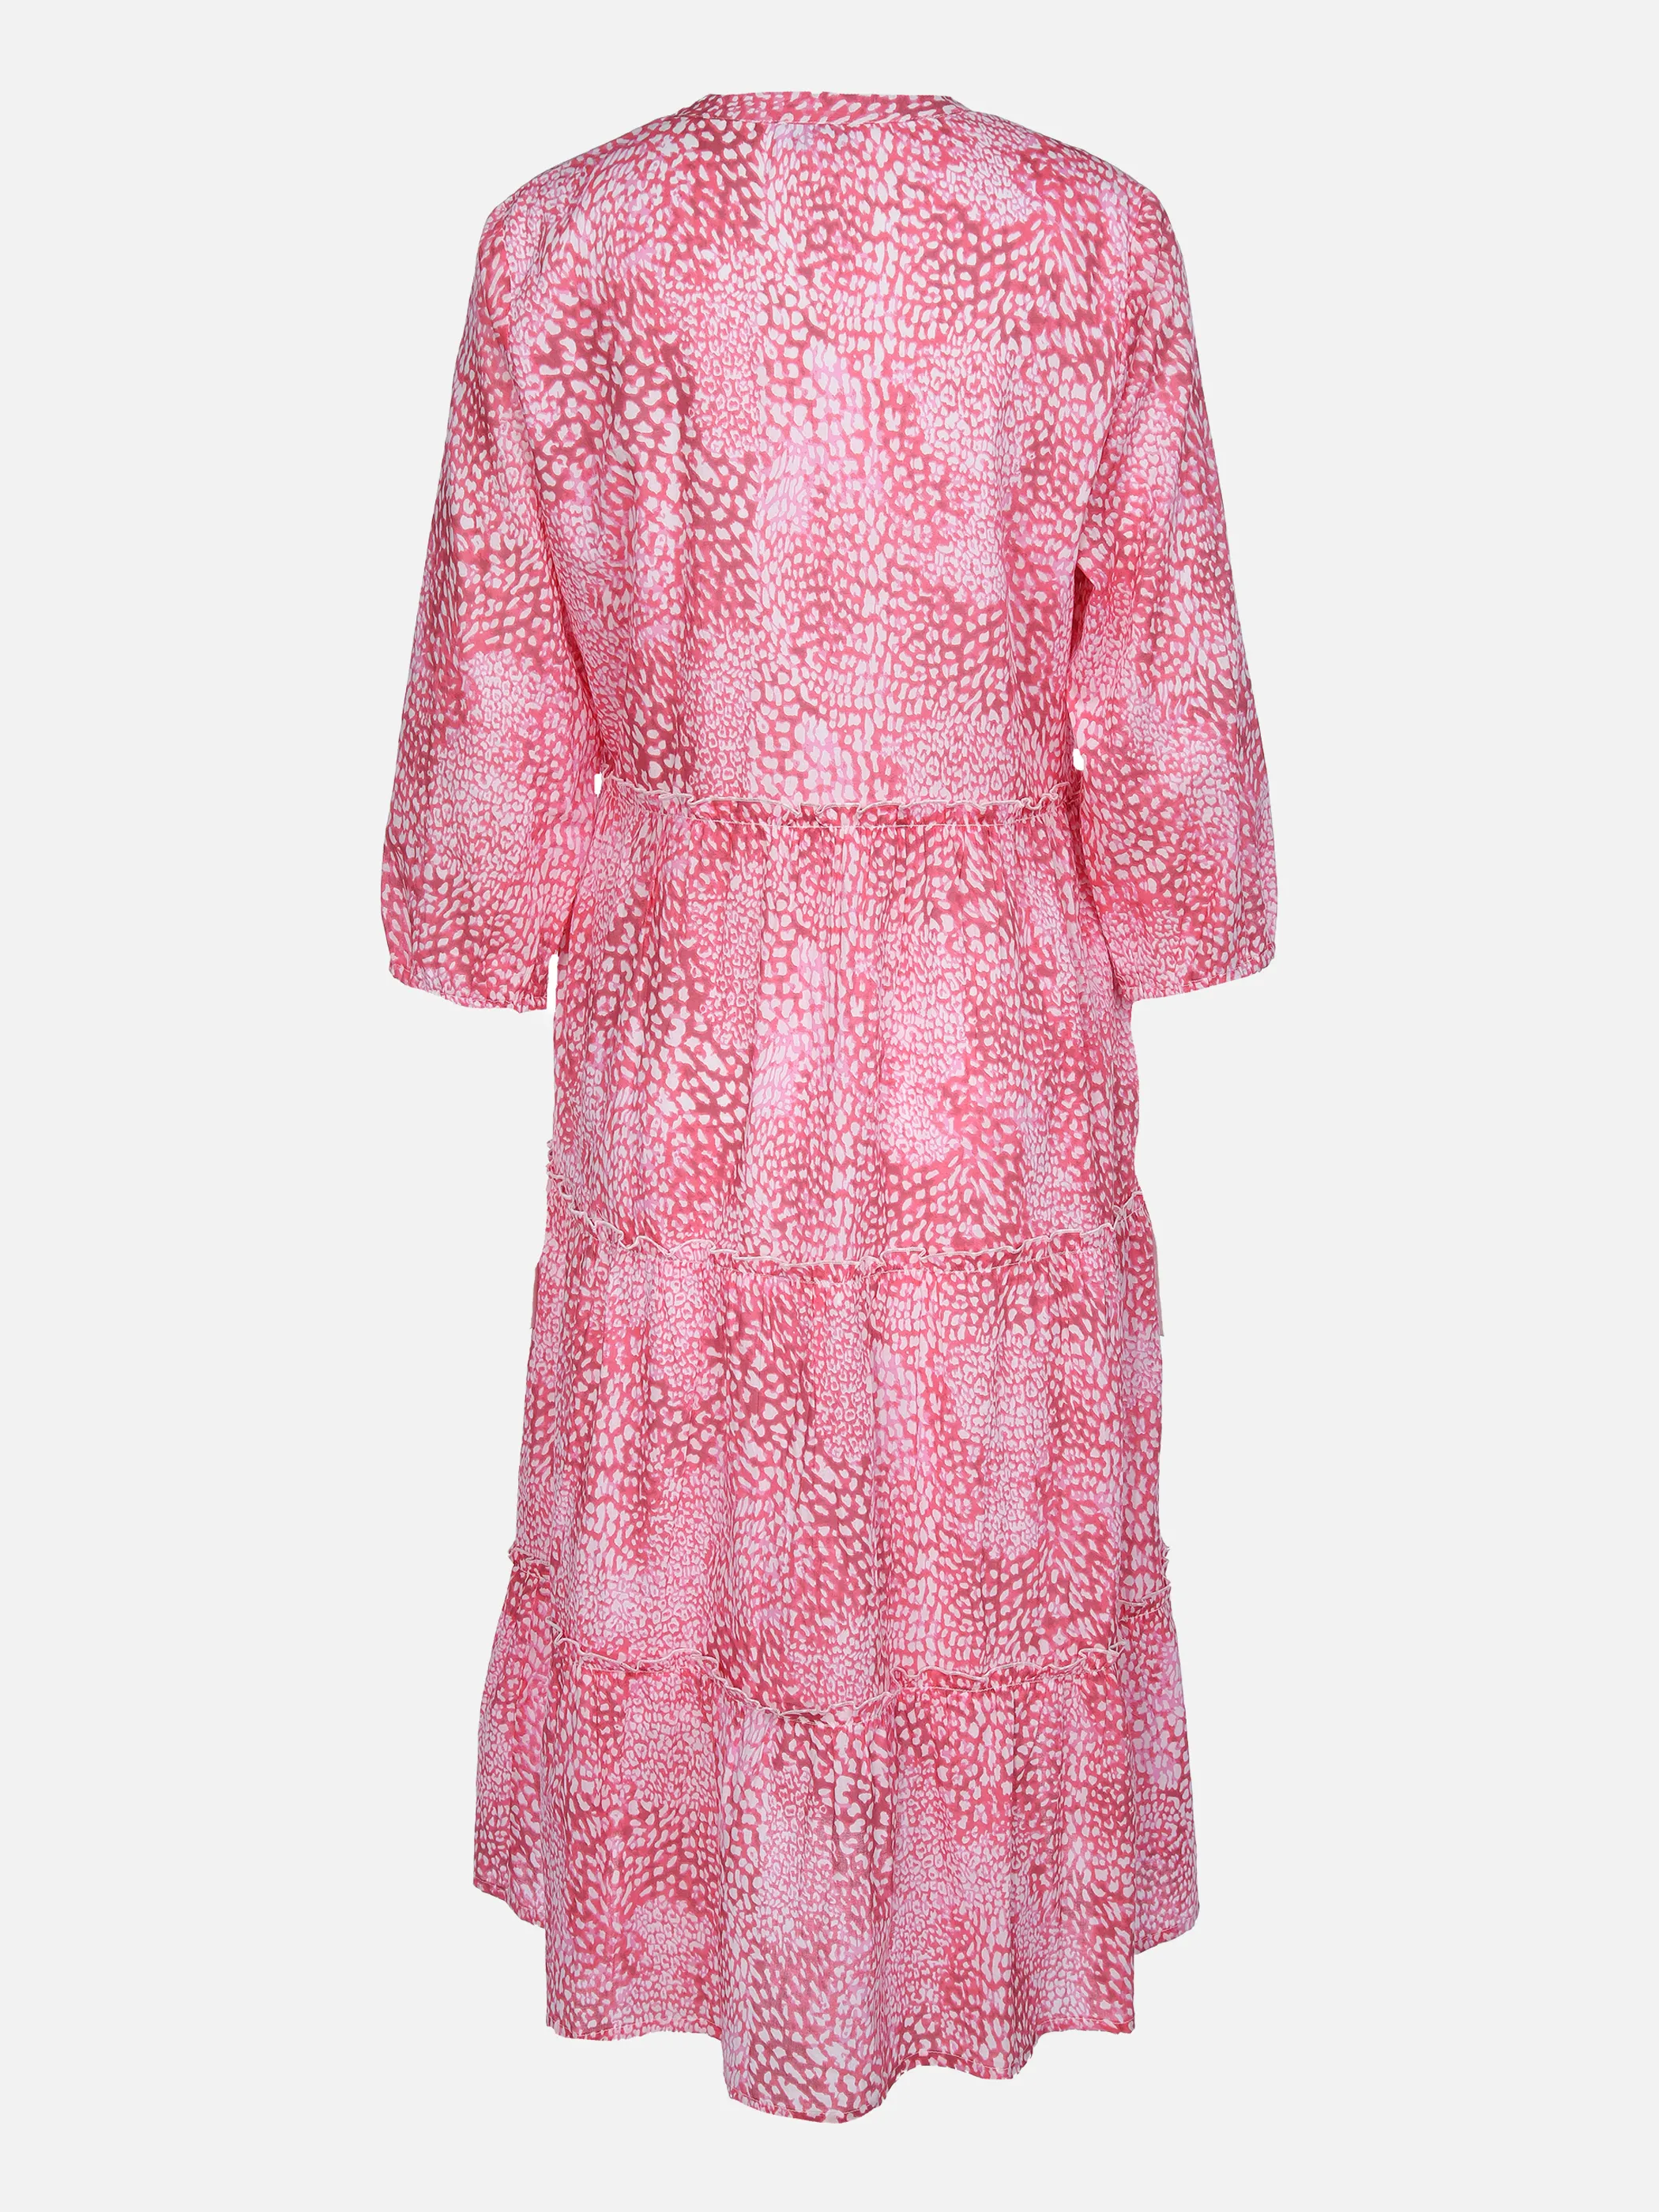 Lisa Tossa Da-Maxi-Kleid mit Muster Pink 862218 PINK GEM. 2